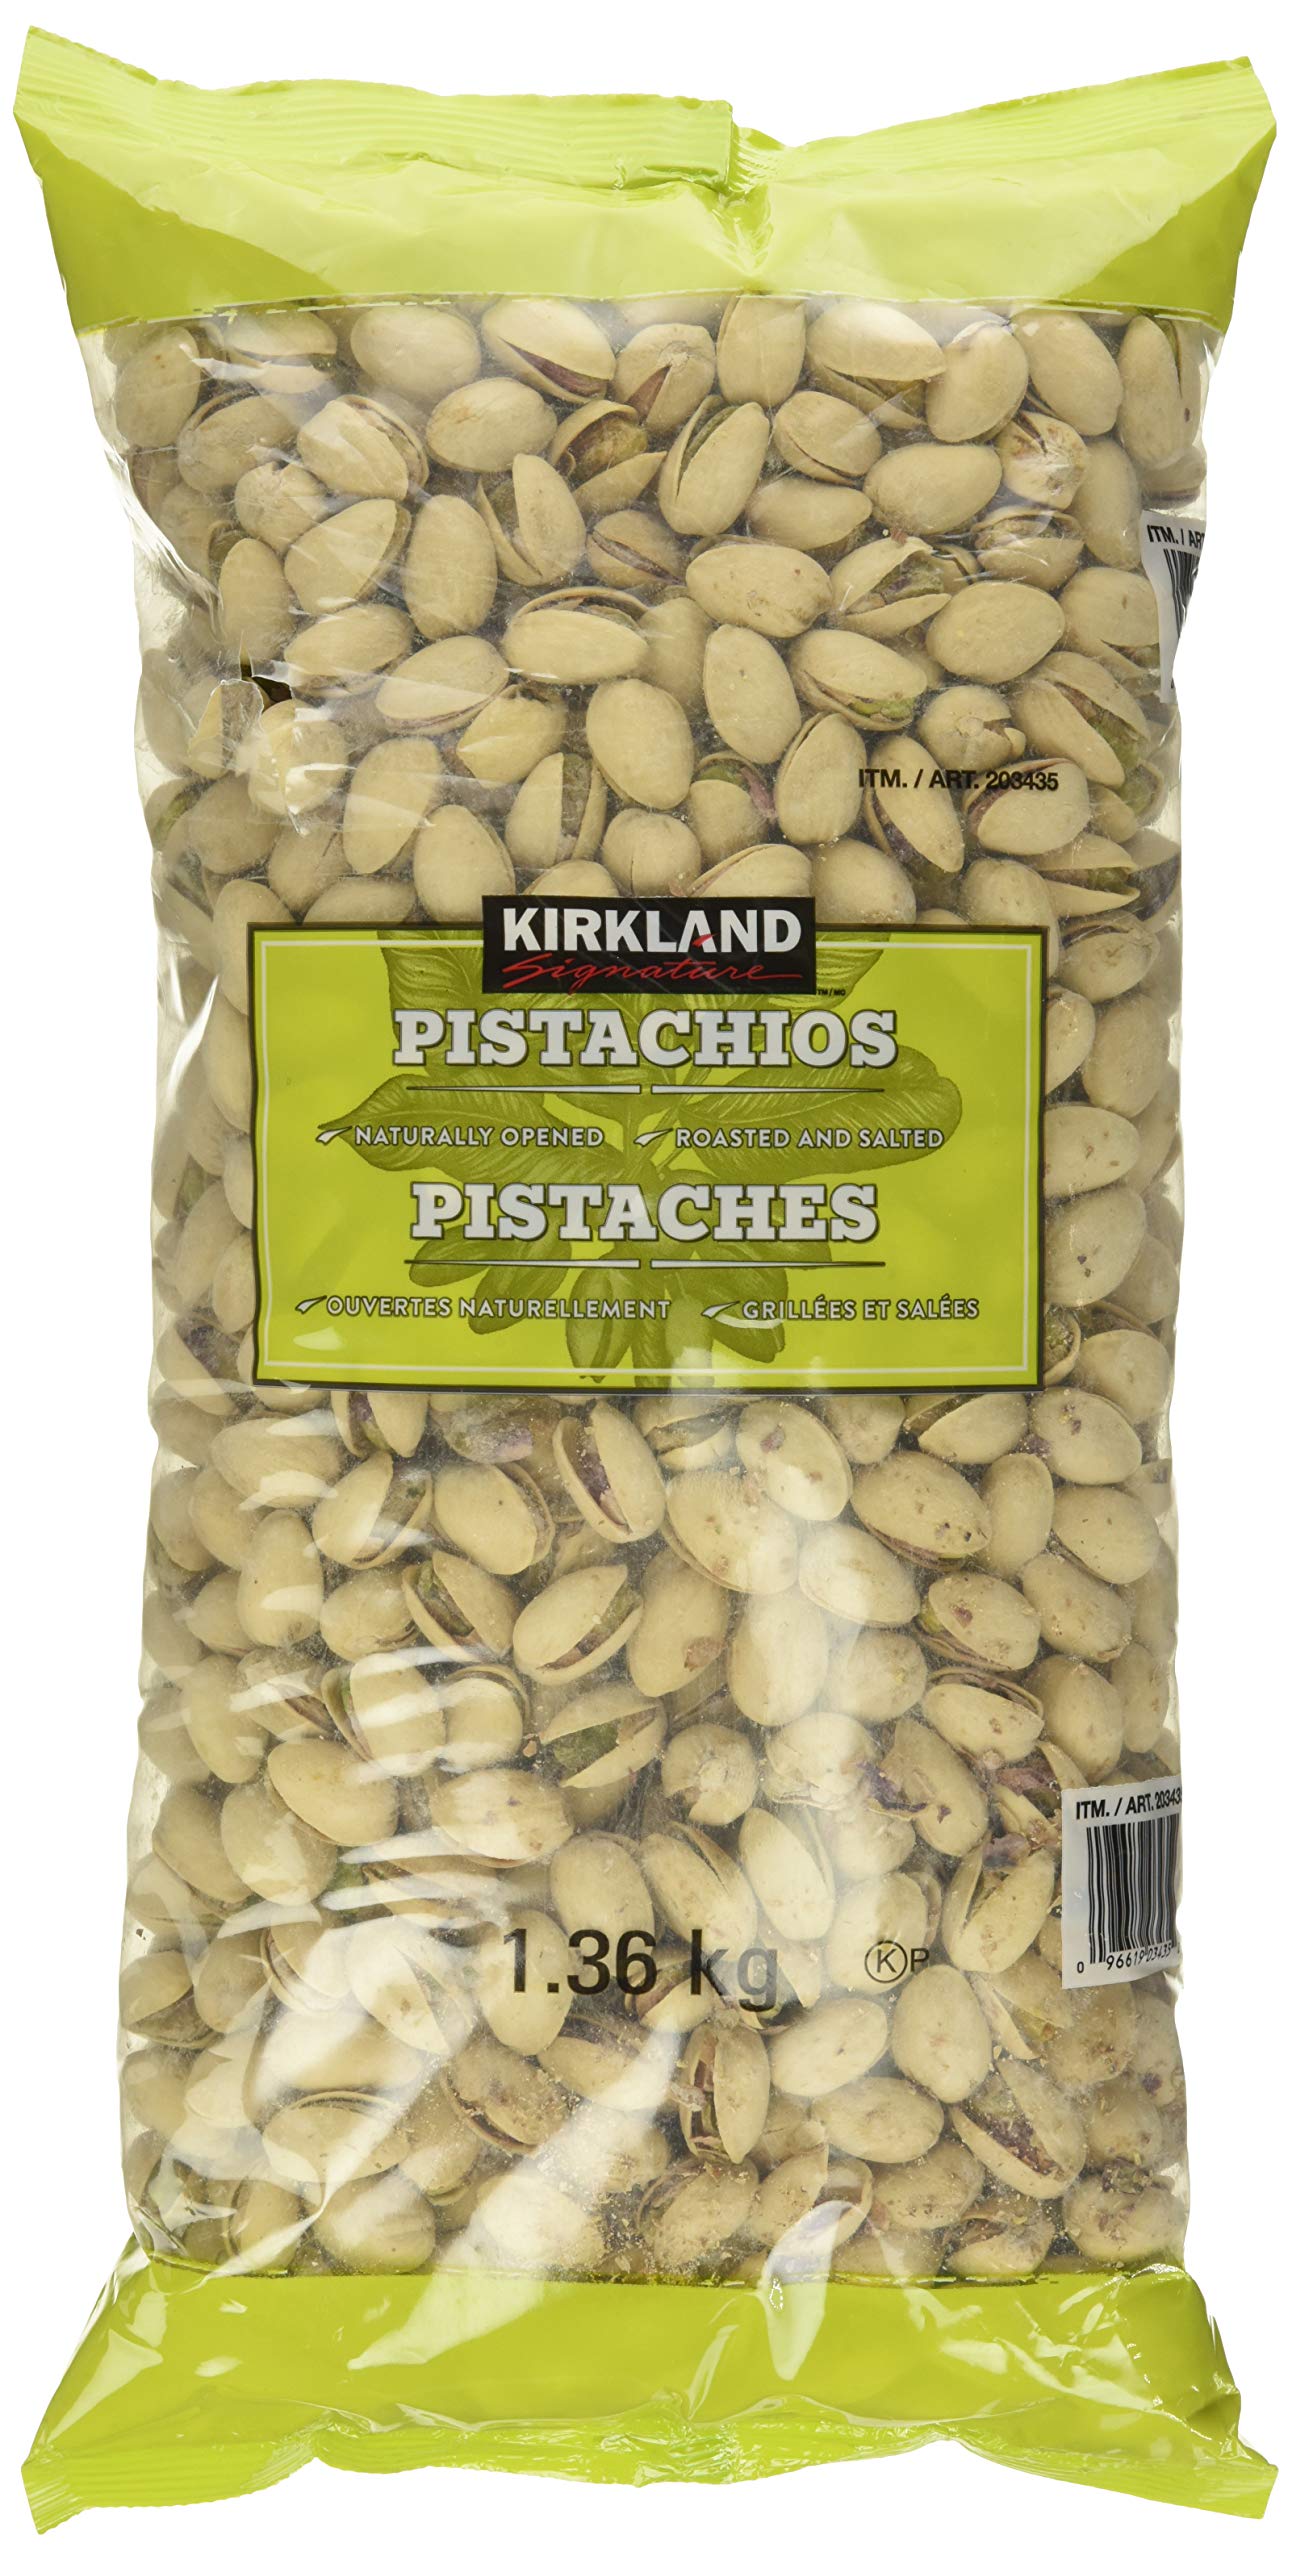 Kirkland Signature Pistachios - 1.36kg